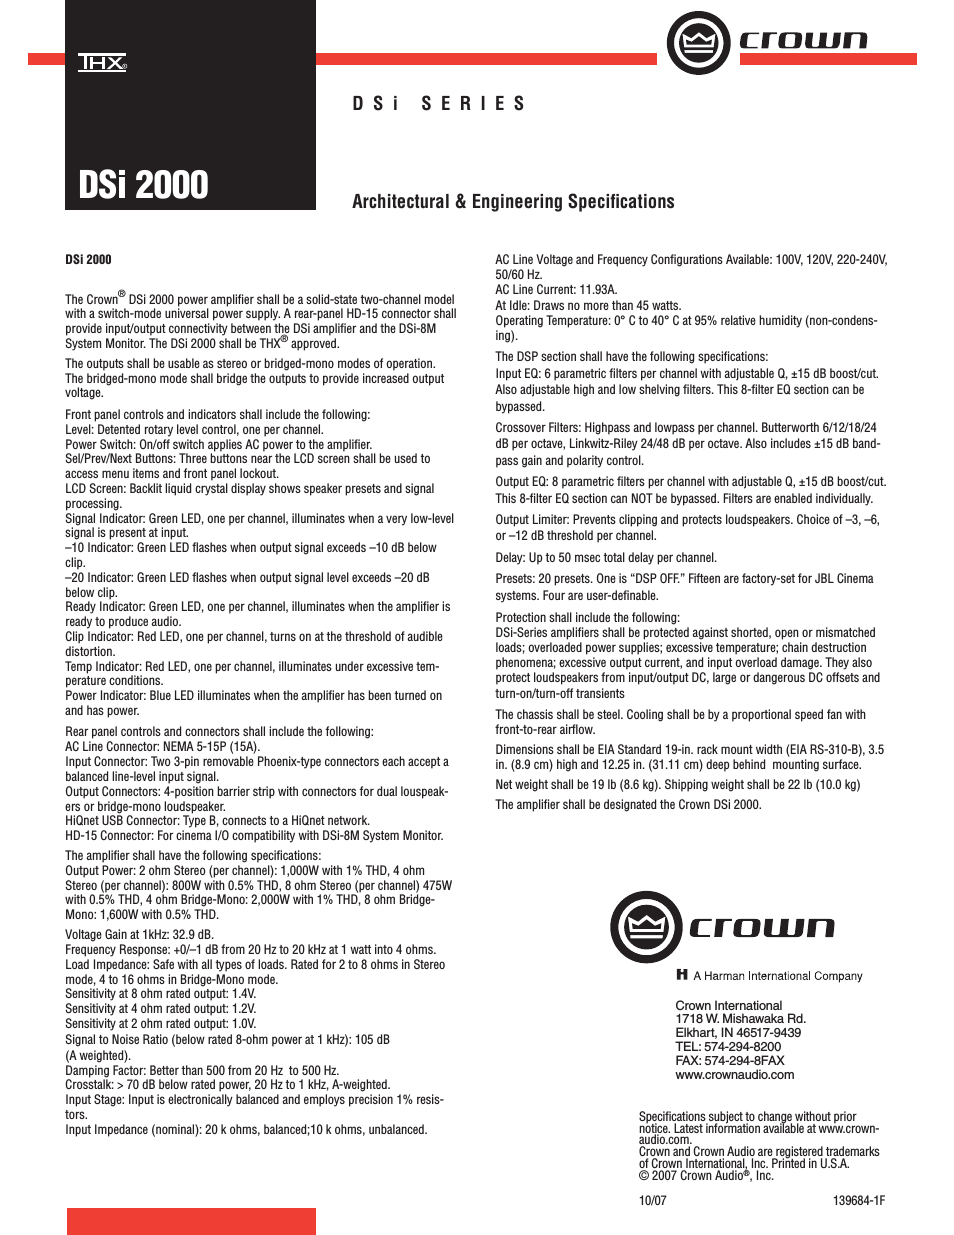 DSi 2000